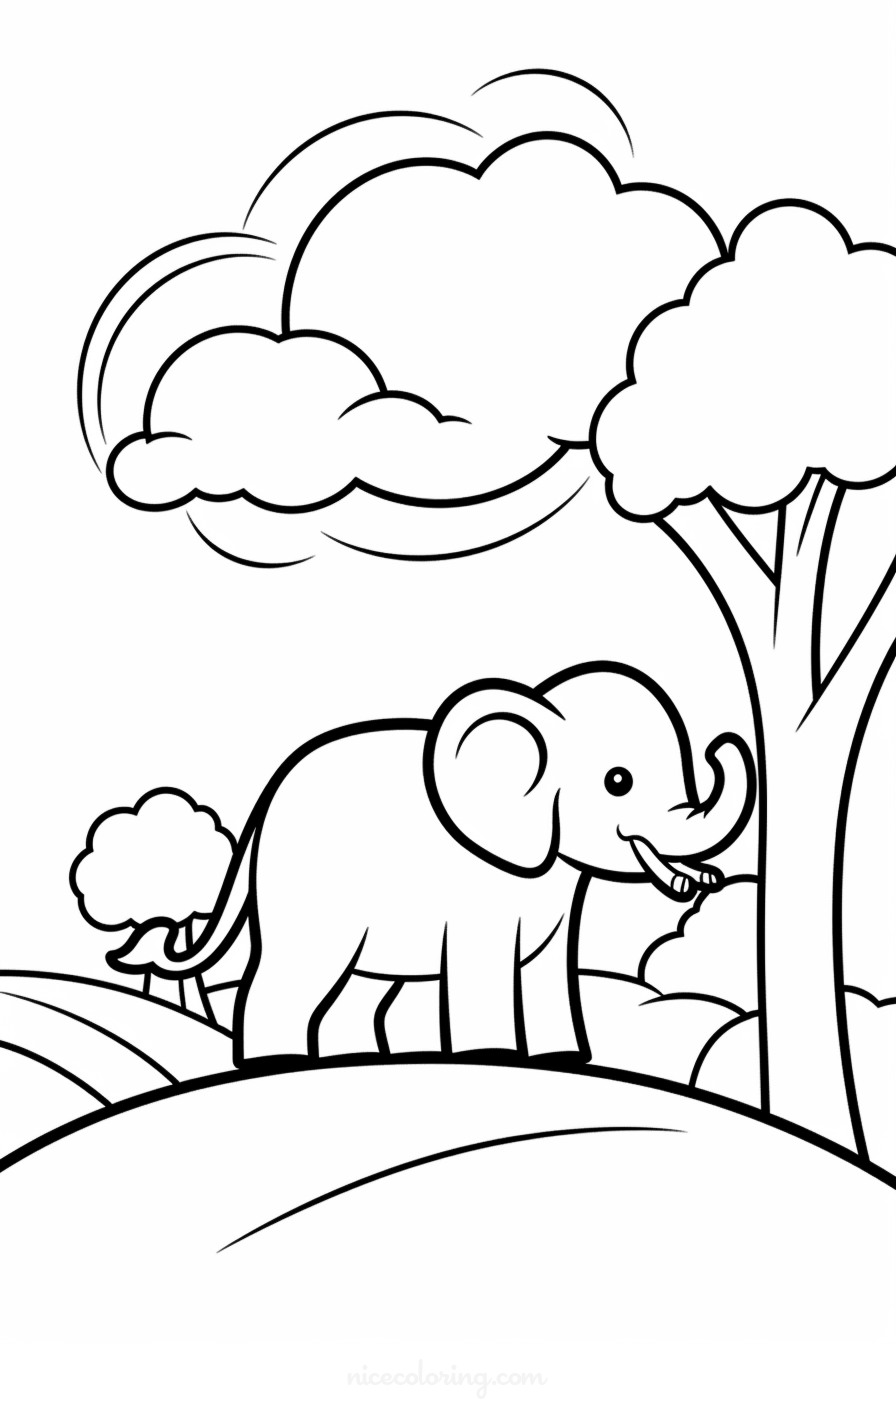 Famille d'éléphants dans une scène naturelle de coloriage